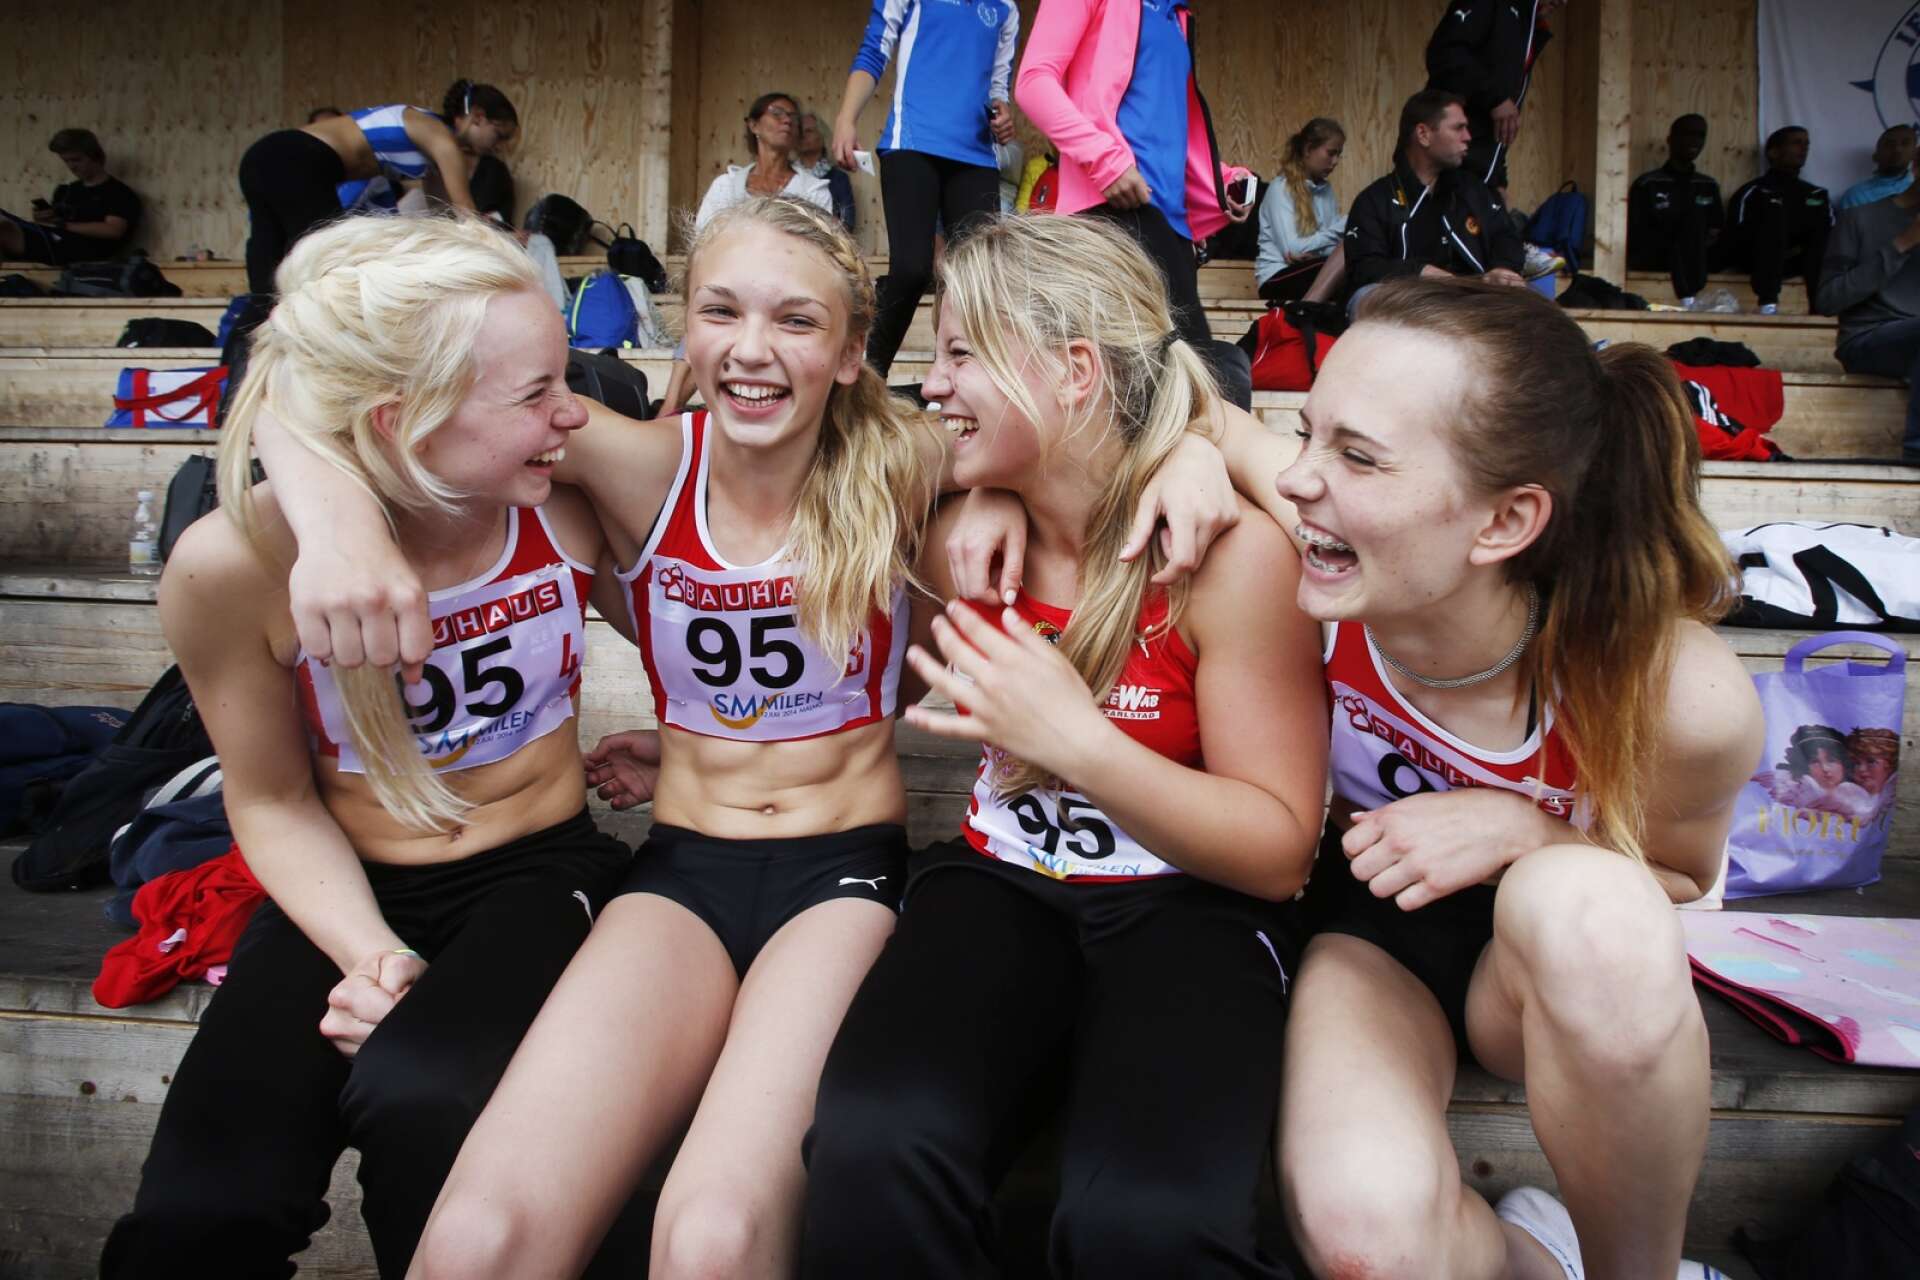 Sveriges bästa stafettlag på 4x100 meter 2014.Götatjejerna Minna Svärd, Victoria Sandsjoe, Agnes Larsson och Alexandra Larsson  sprang hem guld i Ungdoms-SM i Kil.